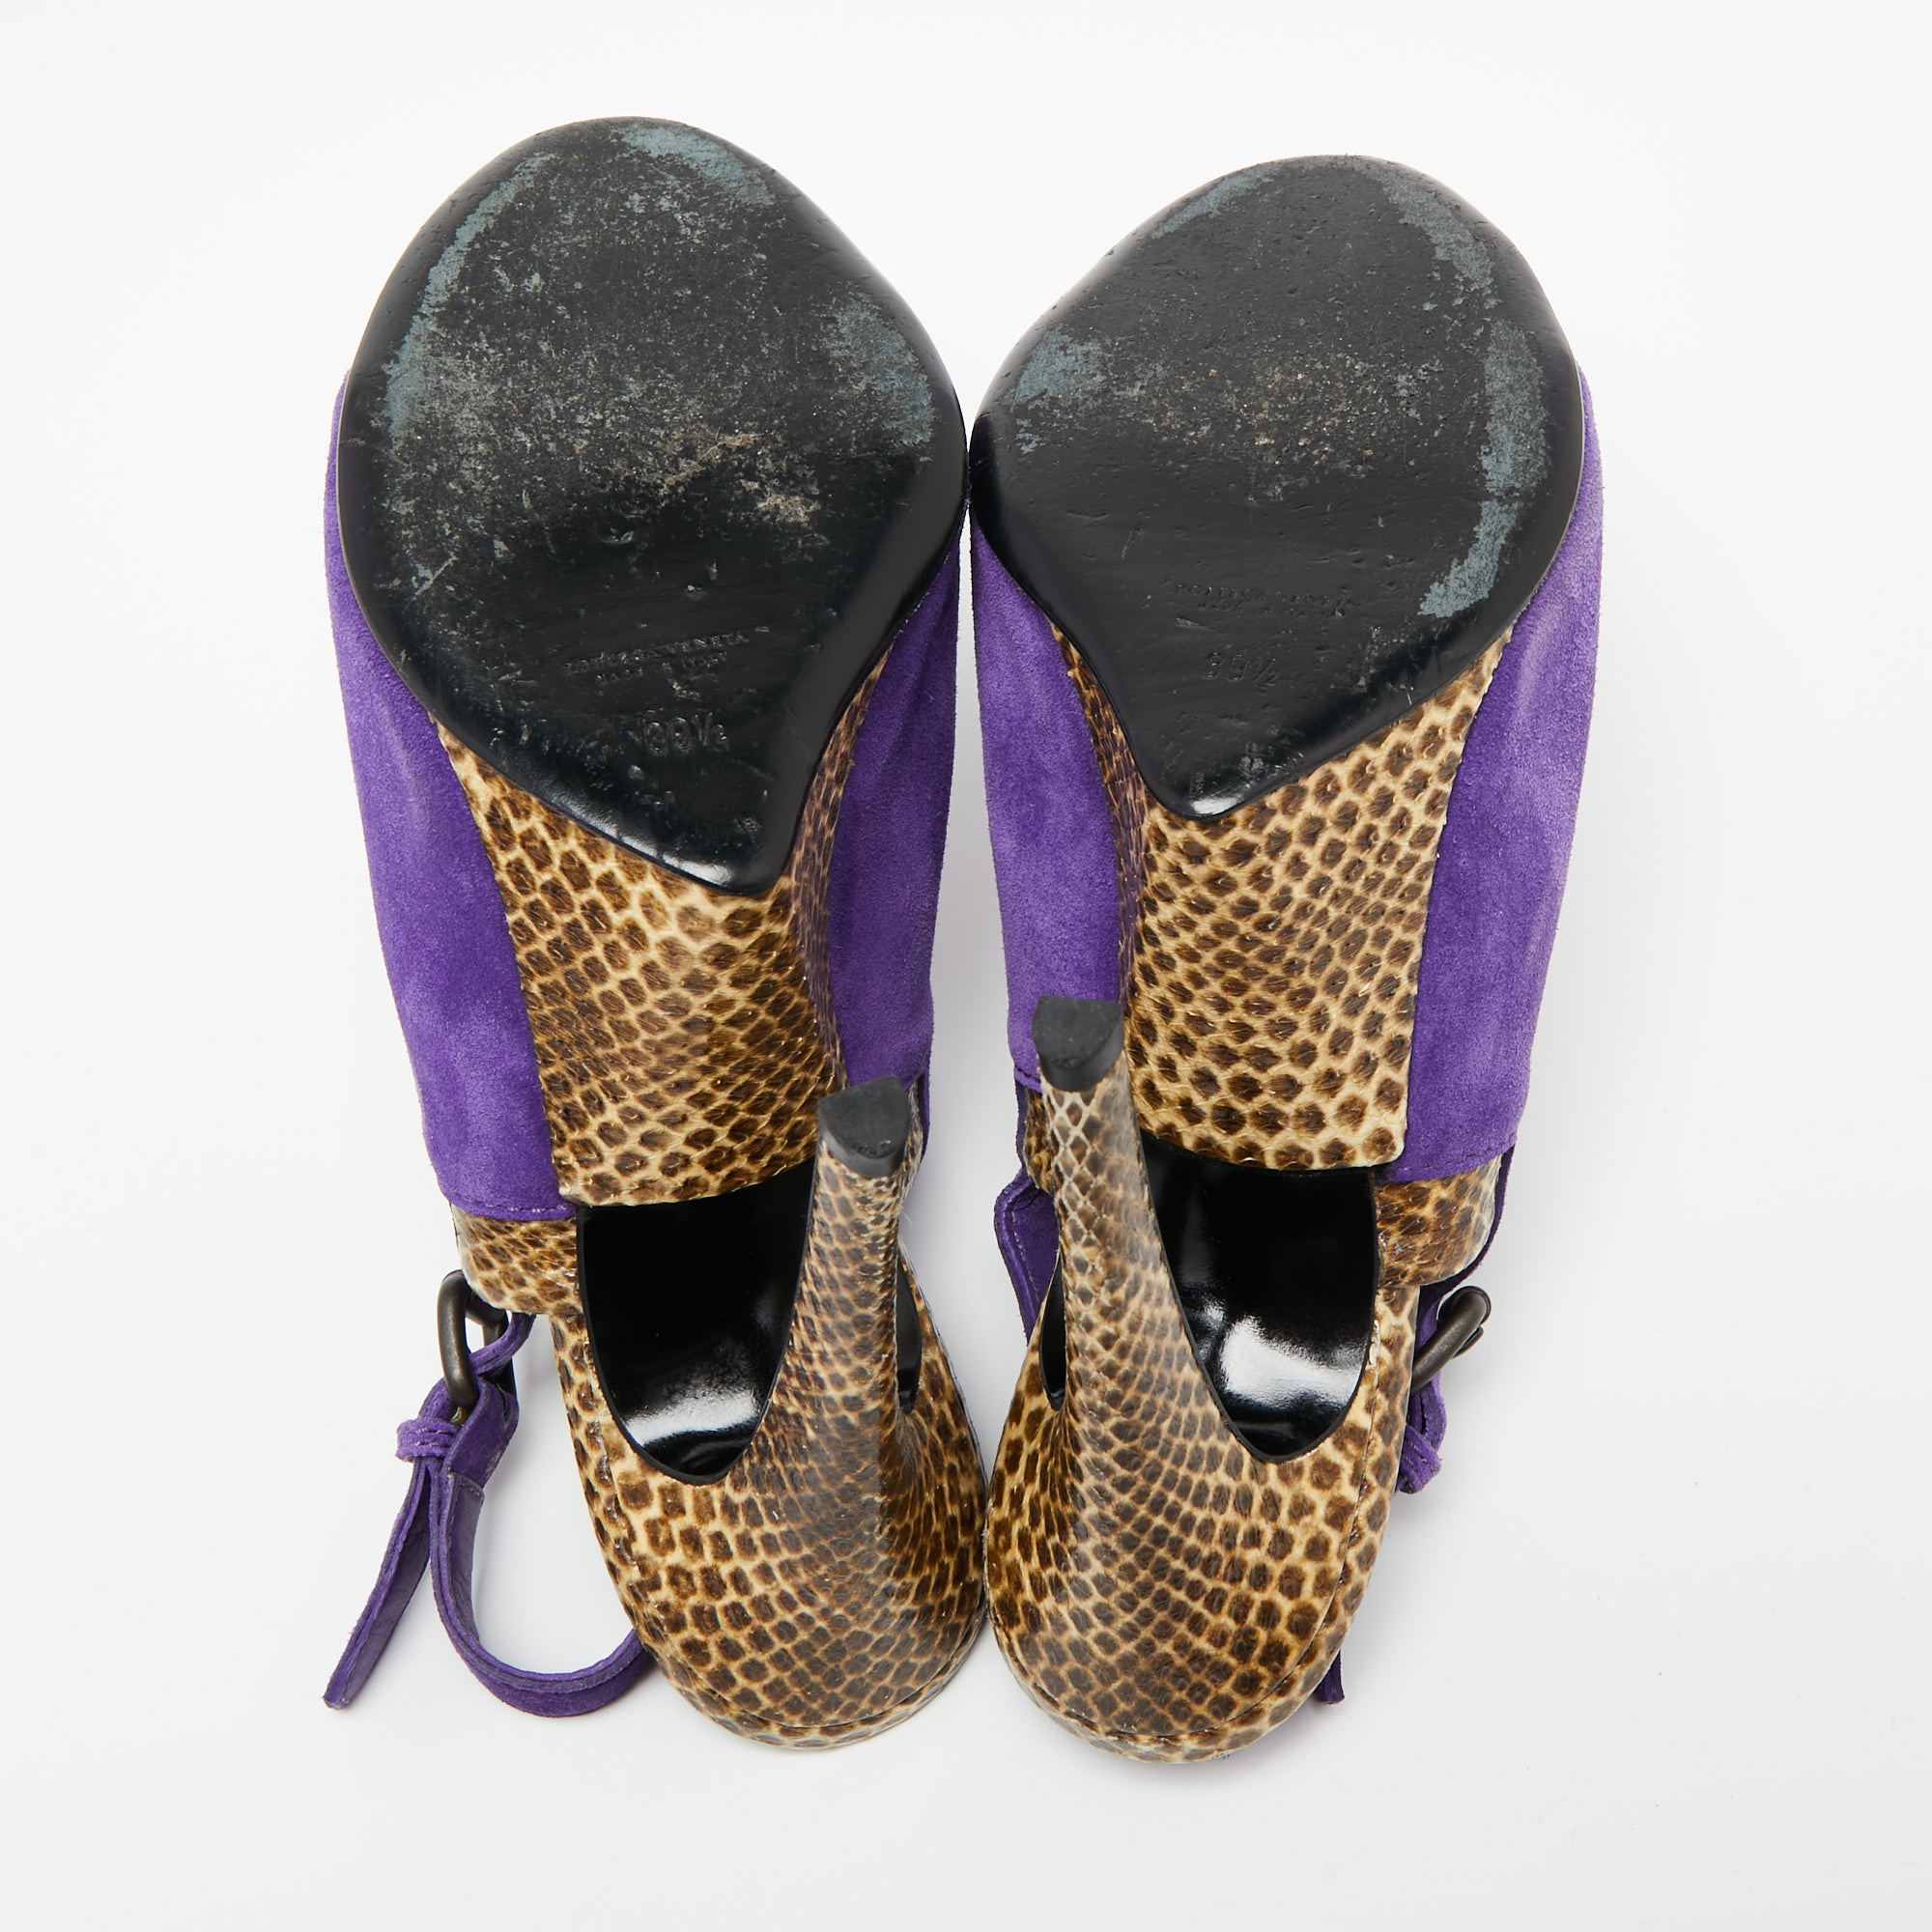 Bottega Veneta Tri-Color Suede And Snakeskin Leather Slingback Sandals Size 39.5